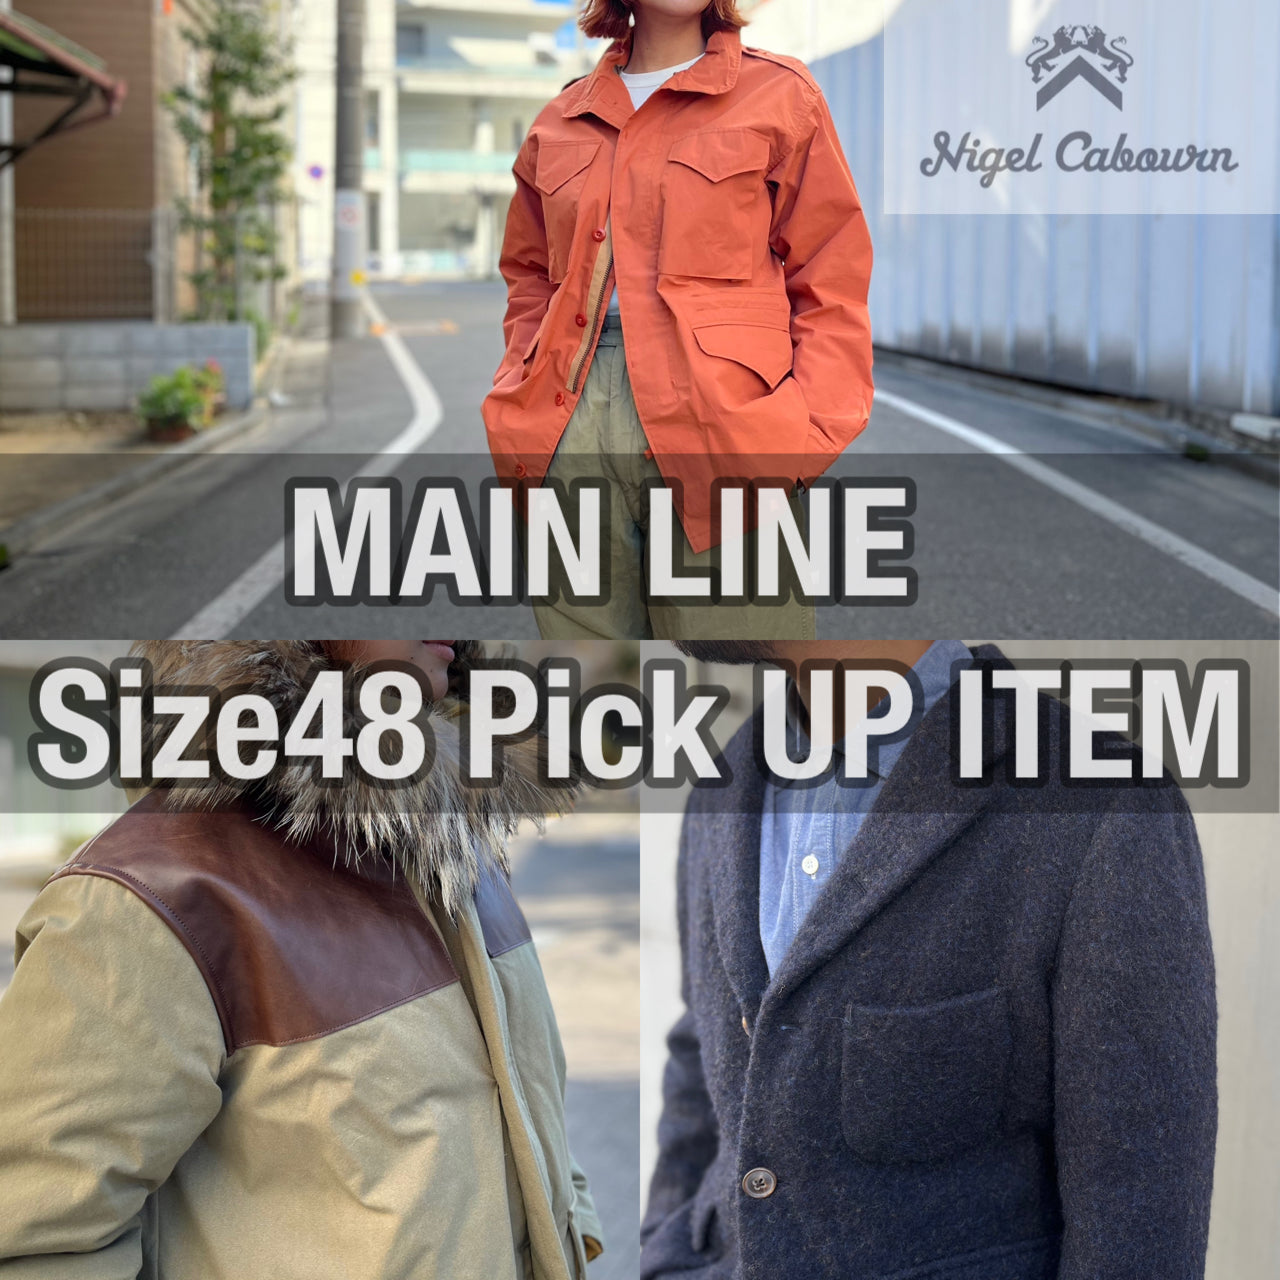 お見逃しなく】MAIN LINE Size48 Pick UP ITEM – ナイジェル・ケーボン 